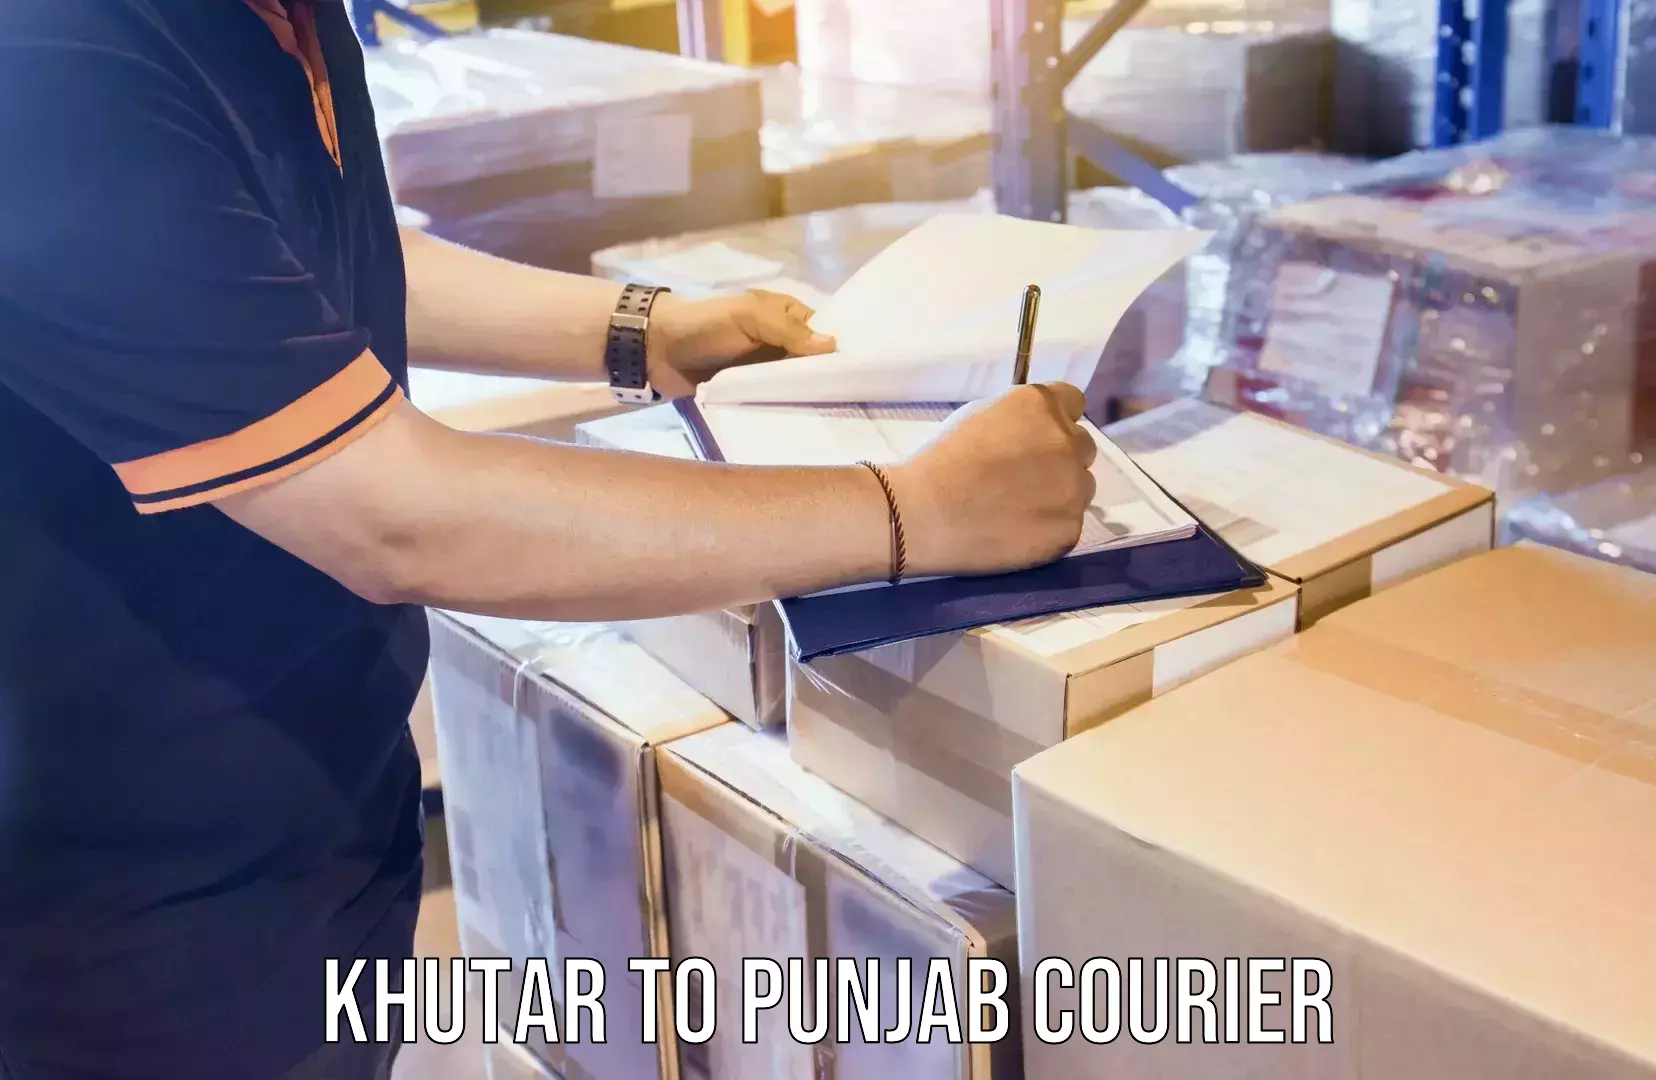 Furniture moving strategies Khutar to Punjab